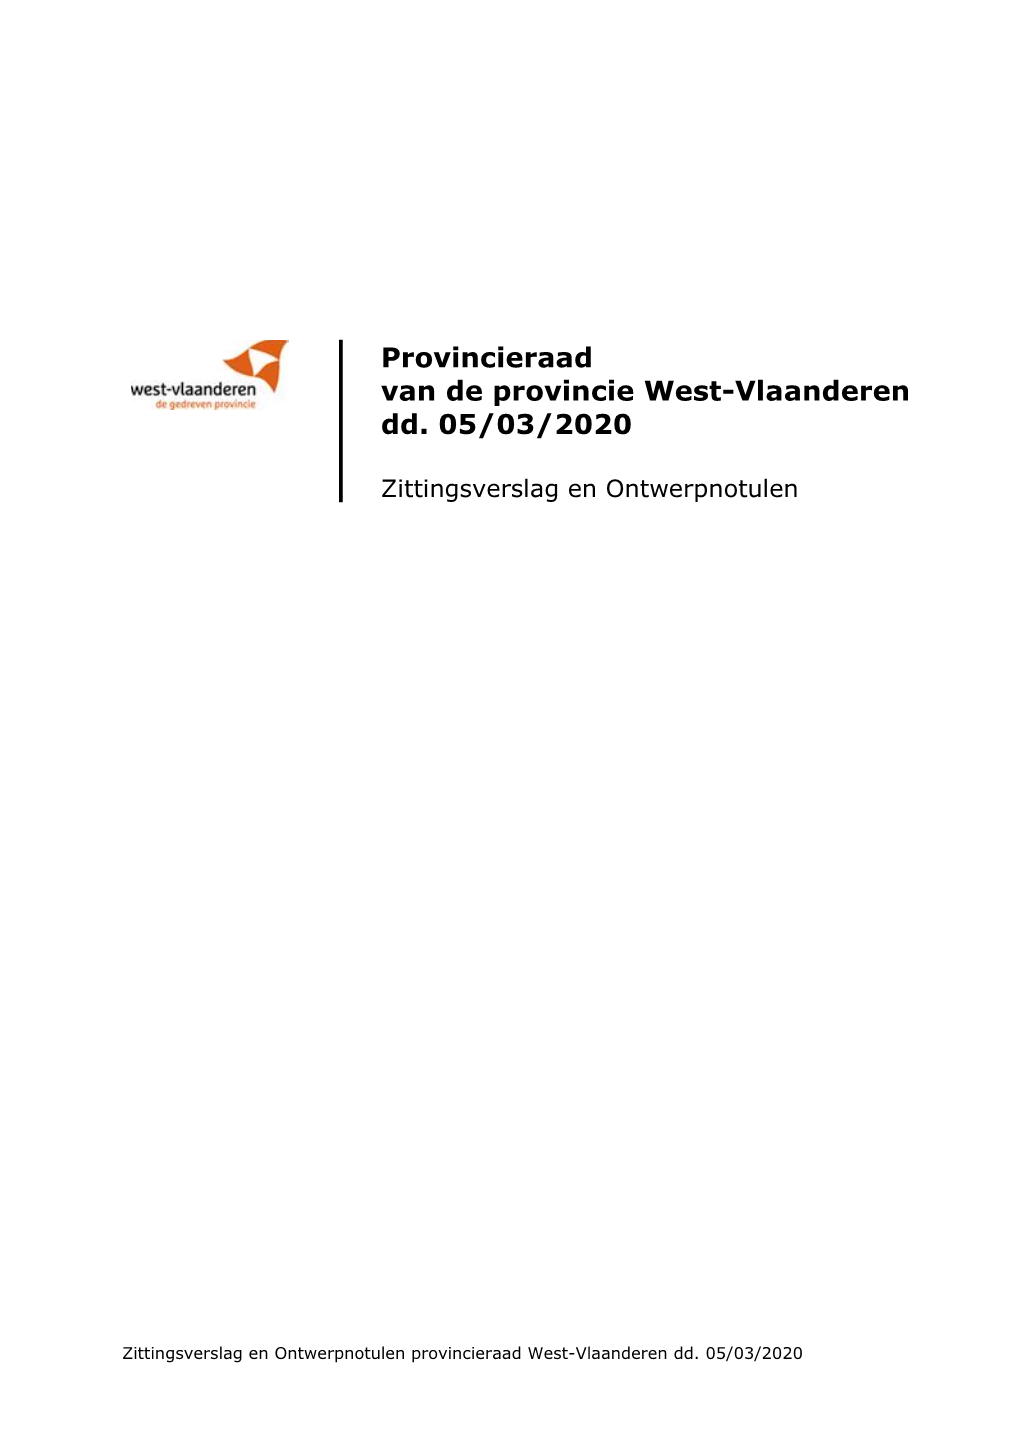 Provincieraad Van De Provincie West-Vlaanderen Dd. 05/03/2020